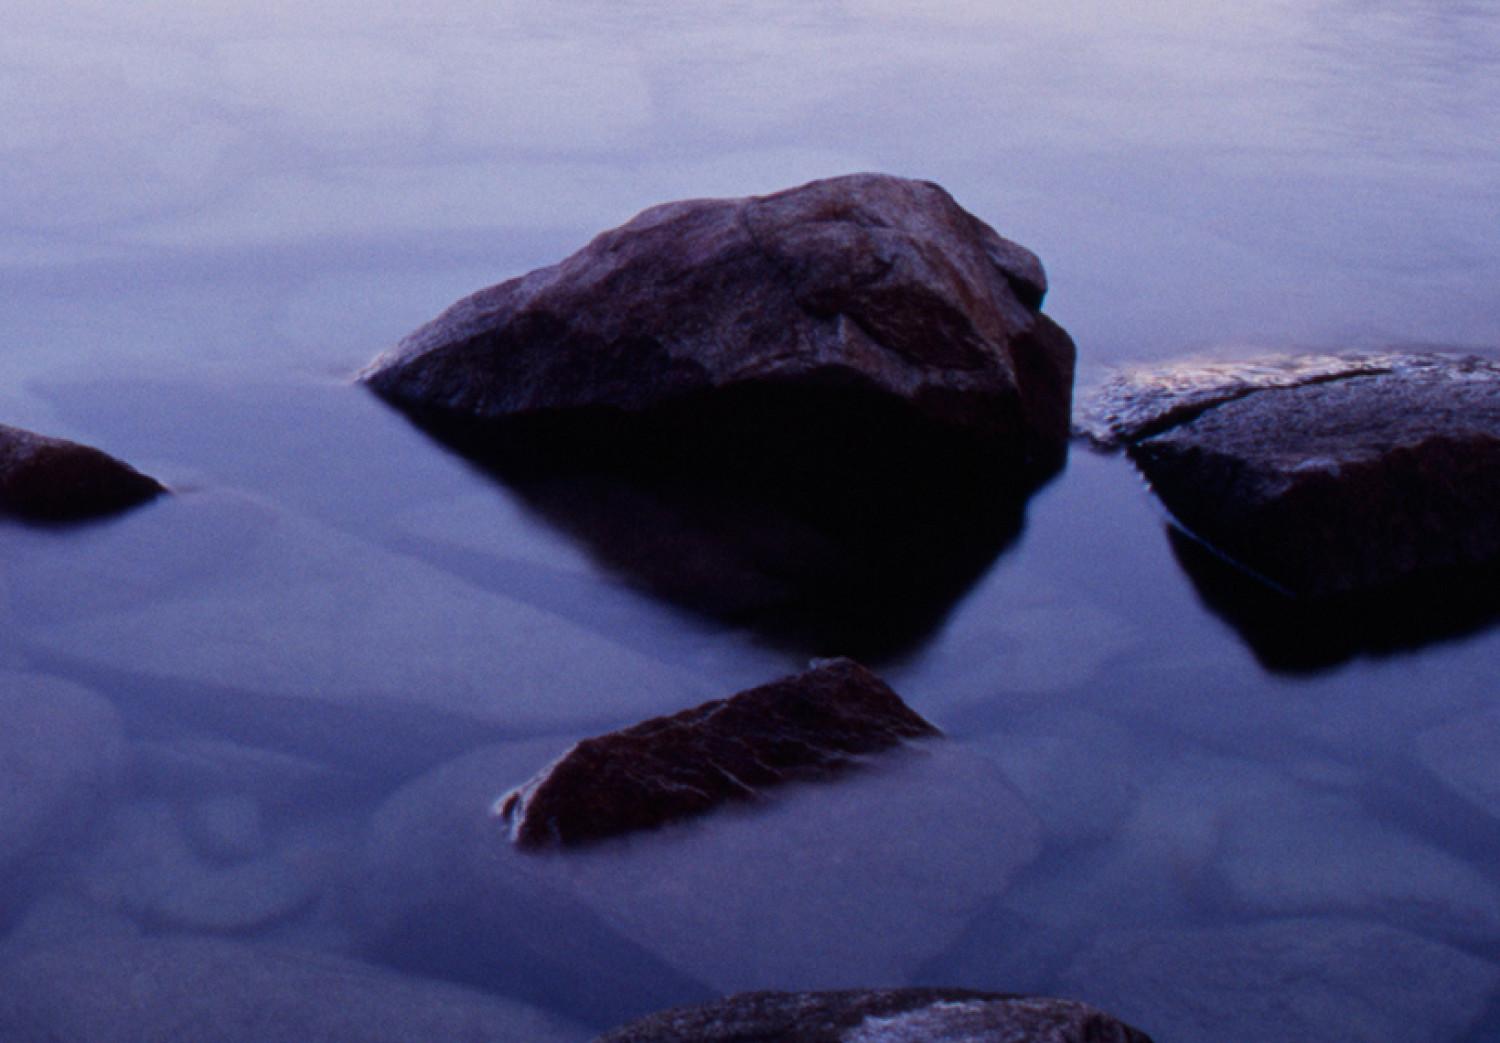 Cuadro moderno Costa rocosa del lago alpino